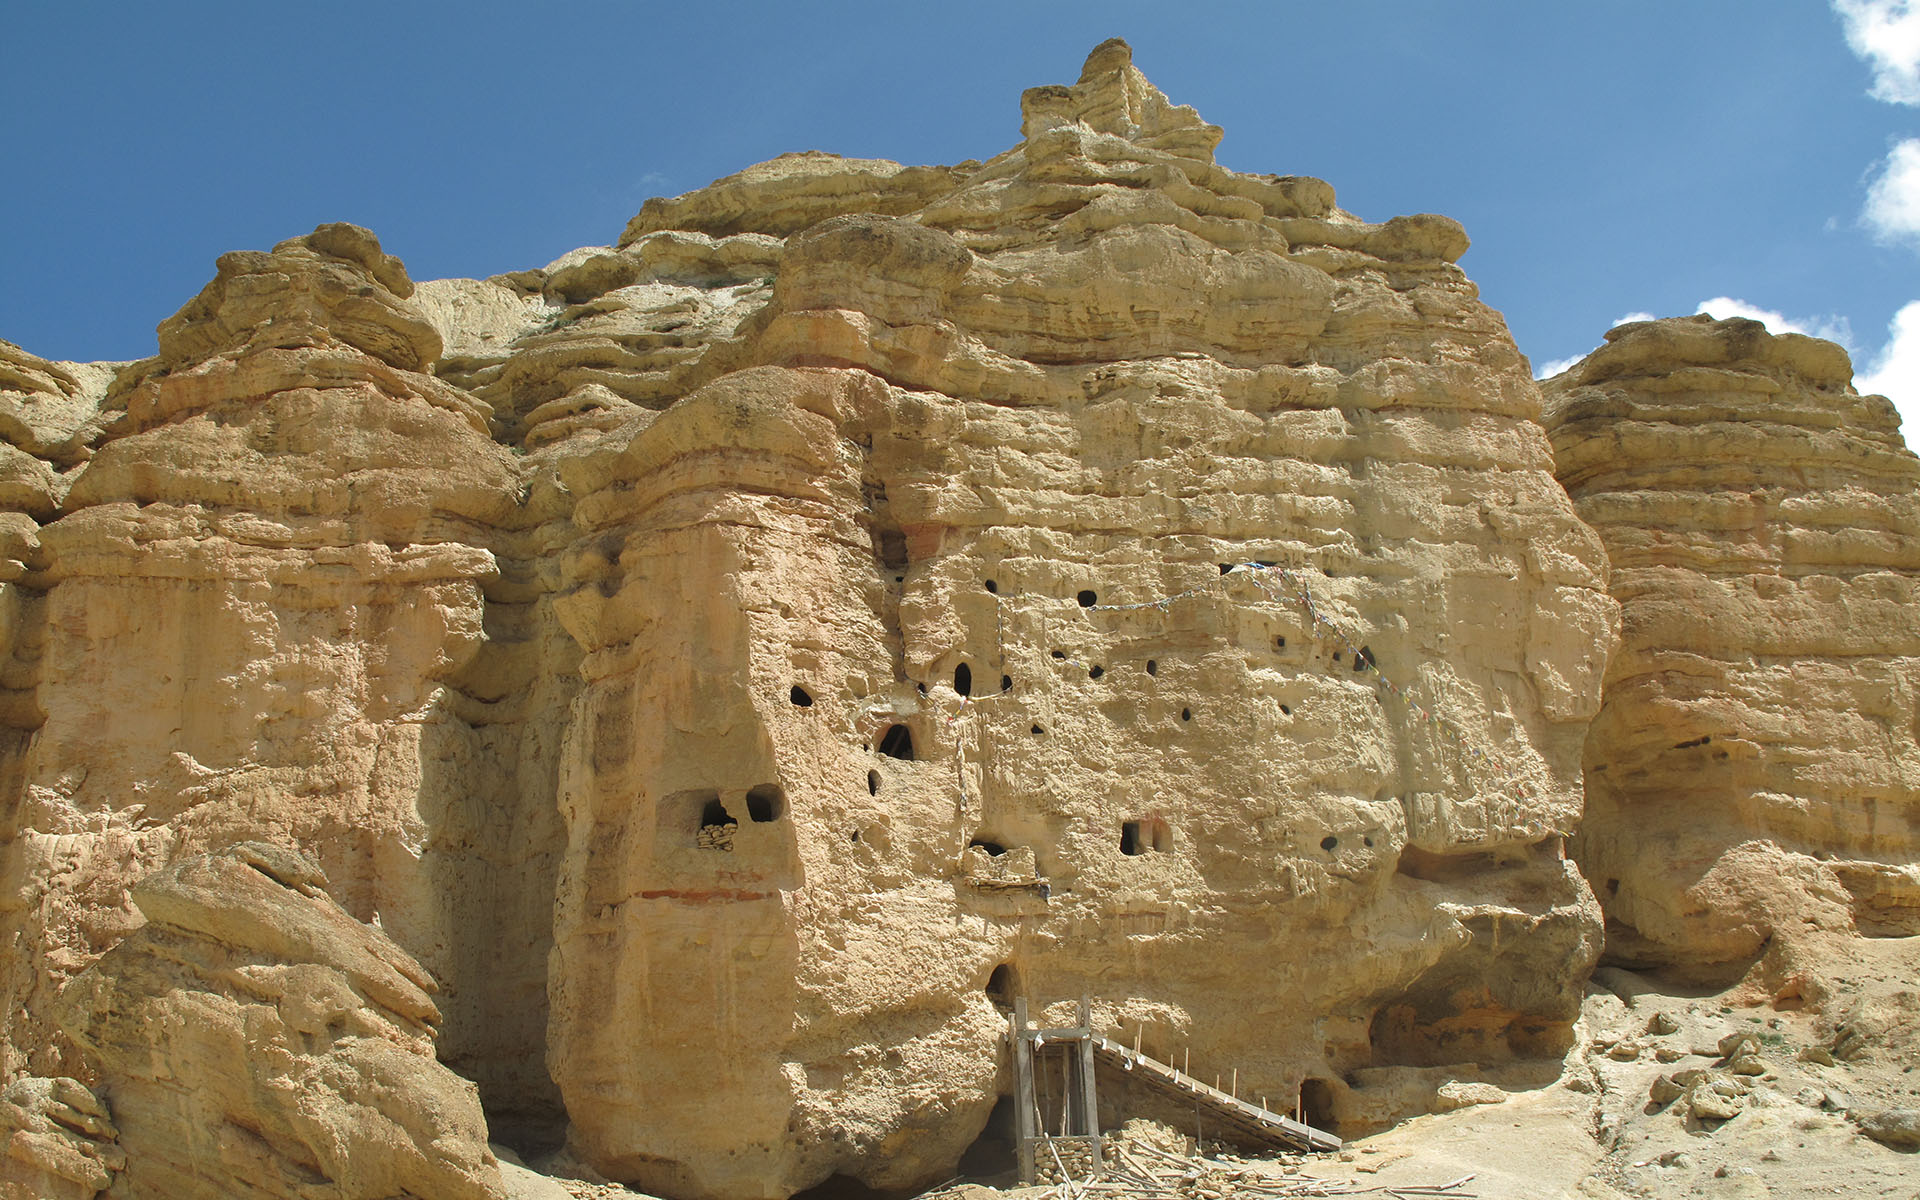 Jhong Cave at Chhosar Upper Mustang